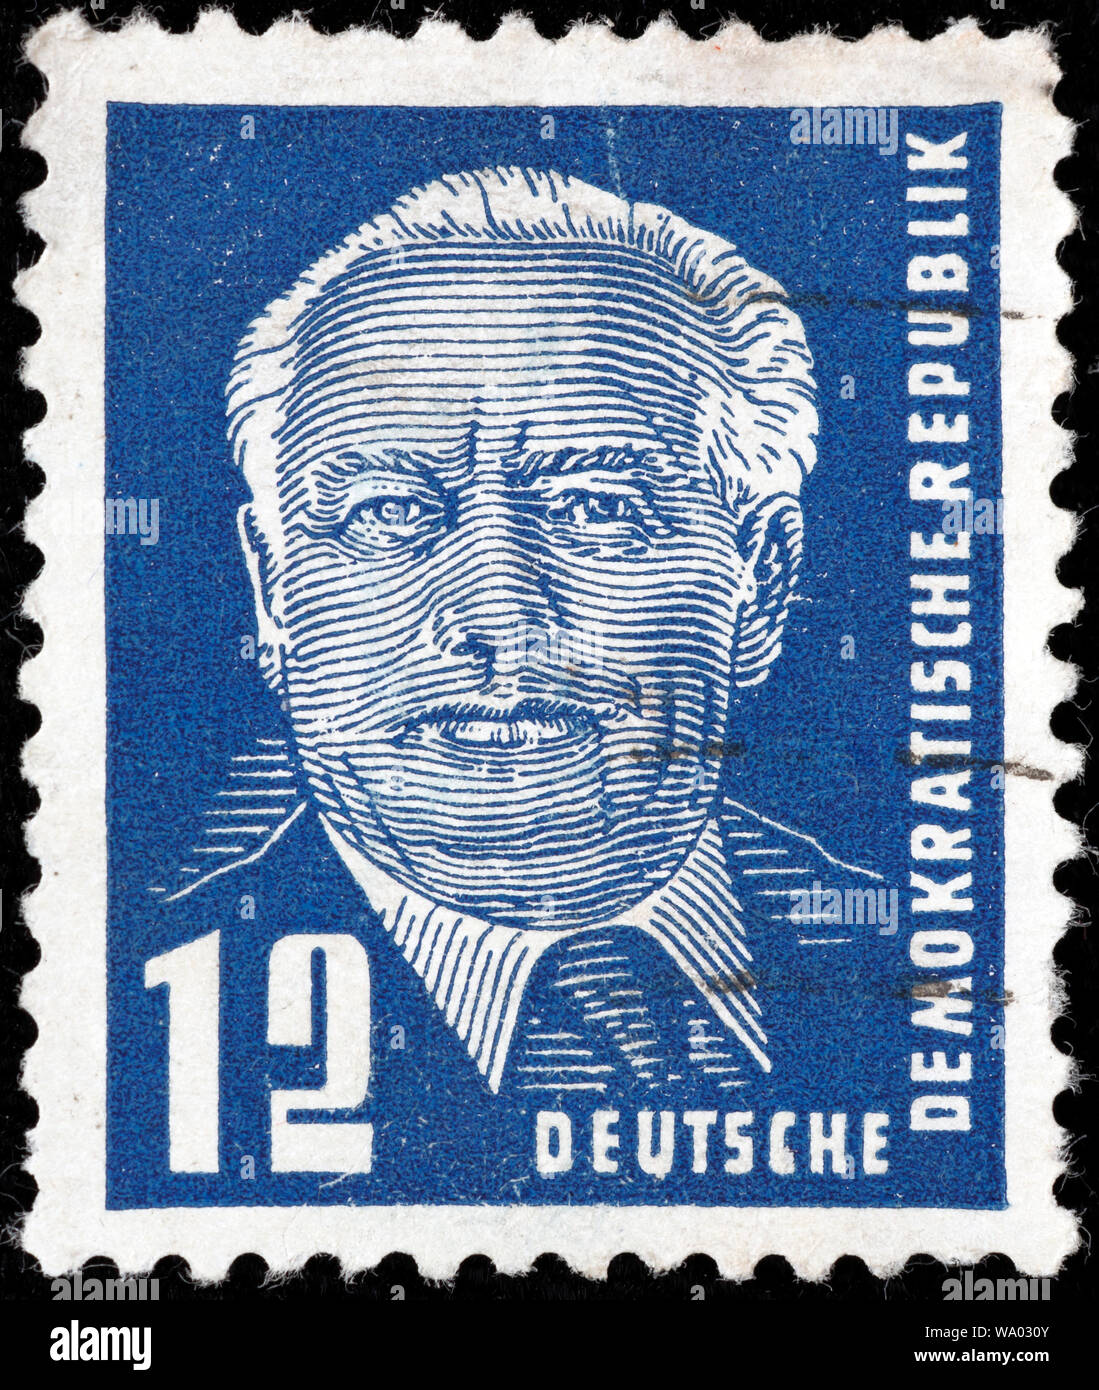 Wilhelm Pieck, Präsident der DDR, die Deutsche Demokratische Republik (1949-1960), Briefmarke, Deutschland, 1952 Stockfoto